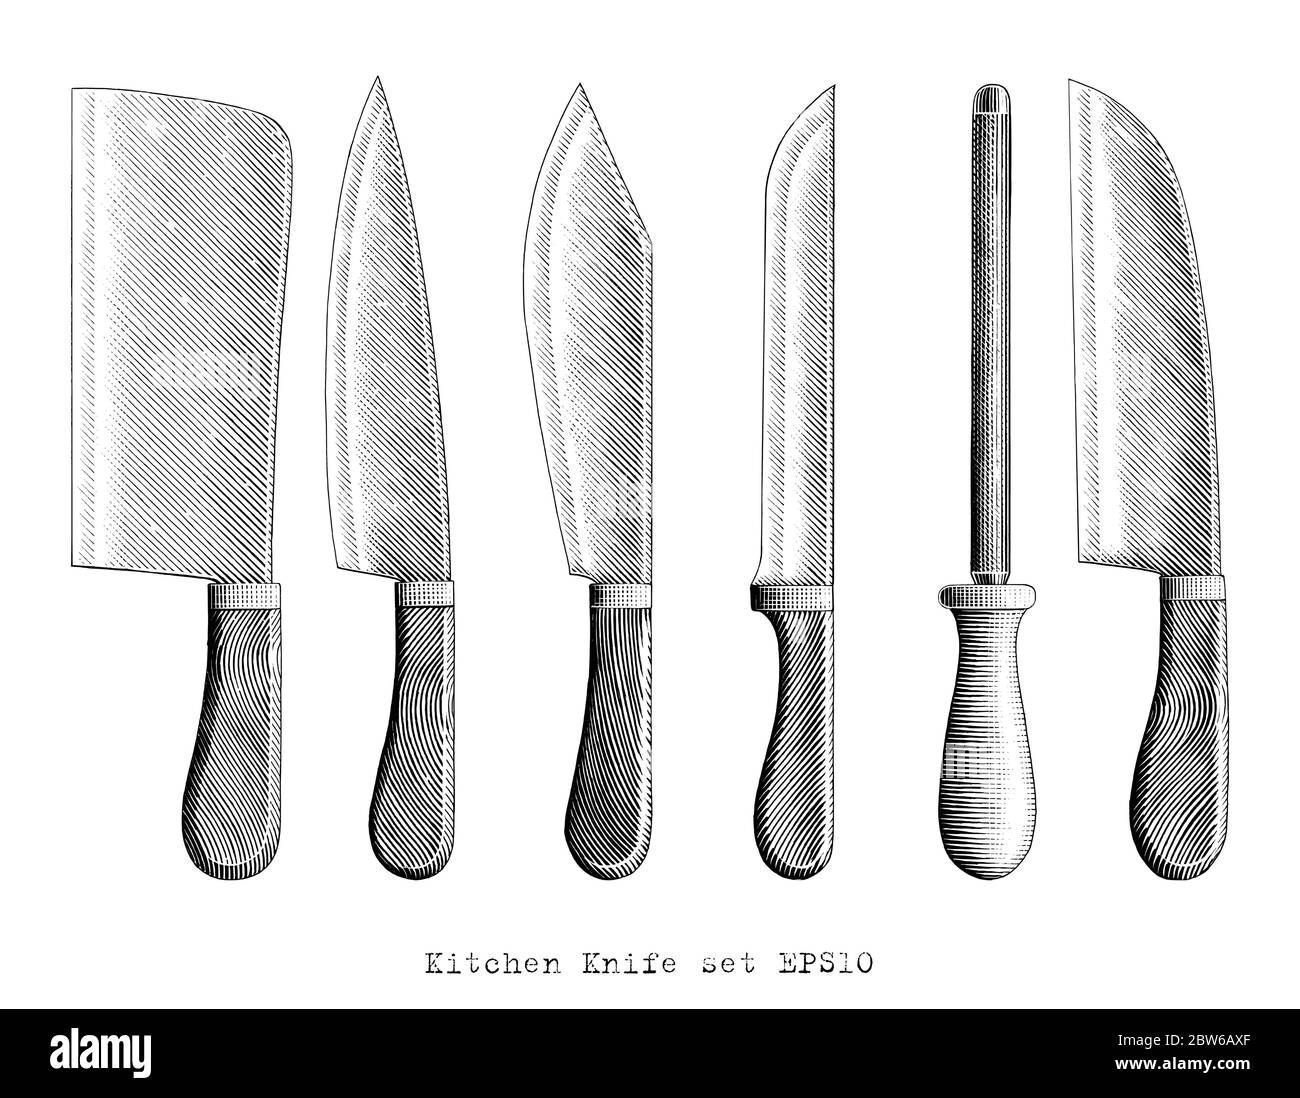 Cuisine couteau illustration main dessin vintage style gravure noir et blanc clip art isolé sur fond blanc Illustration de Vecteur